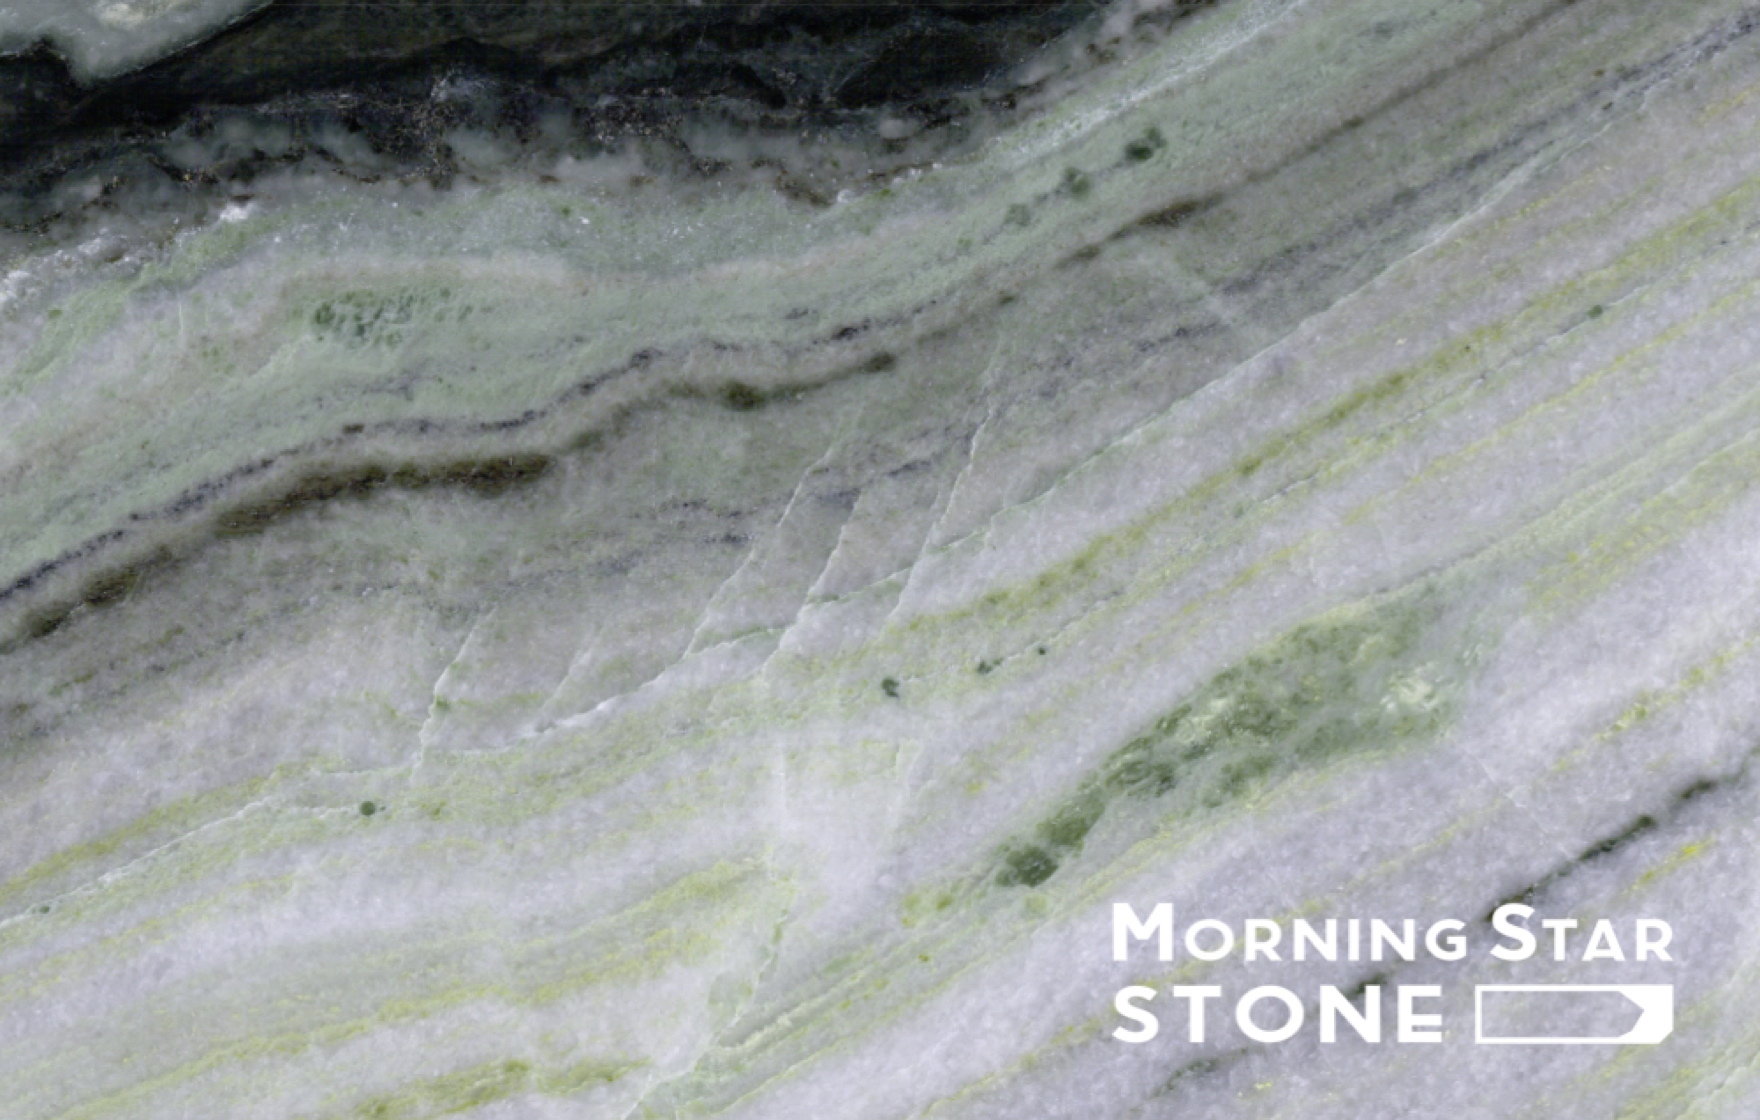 La avantaĝoj de precizeco kaj efikeco en akvojet tranĉanta marmoron |Matena stelo